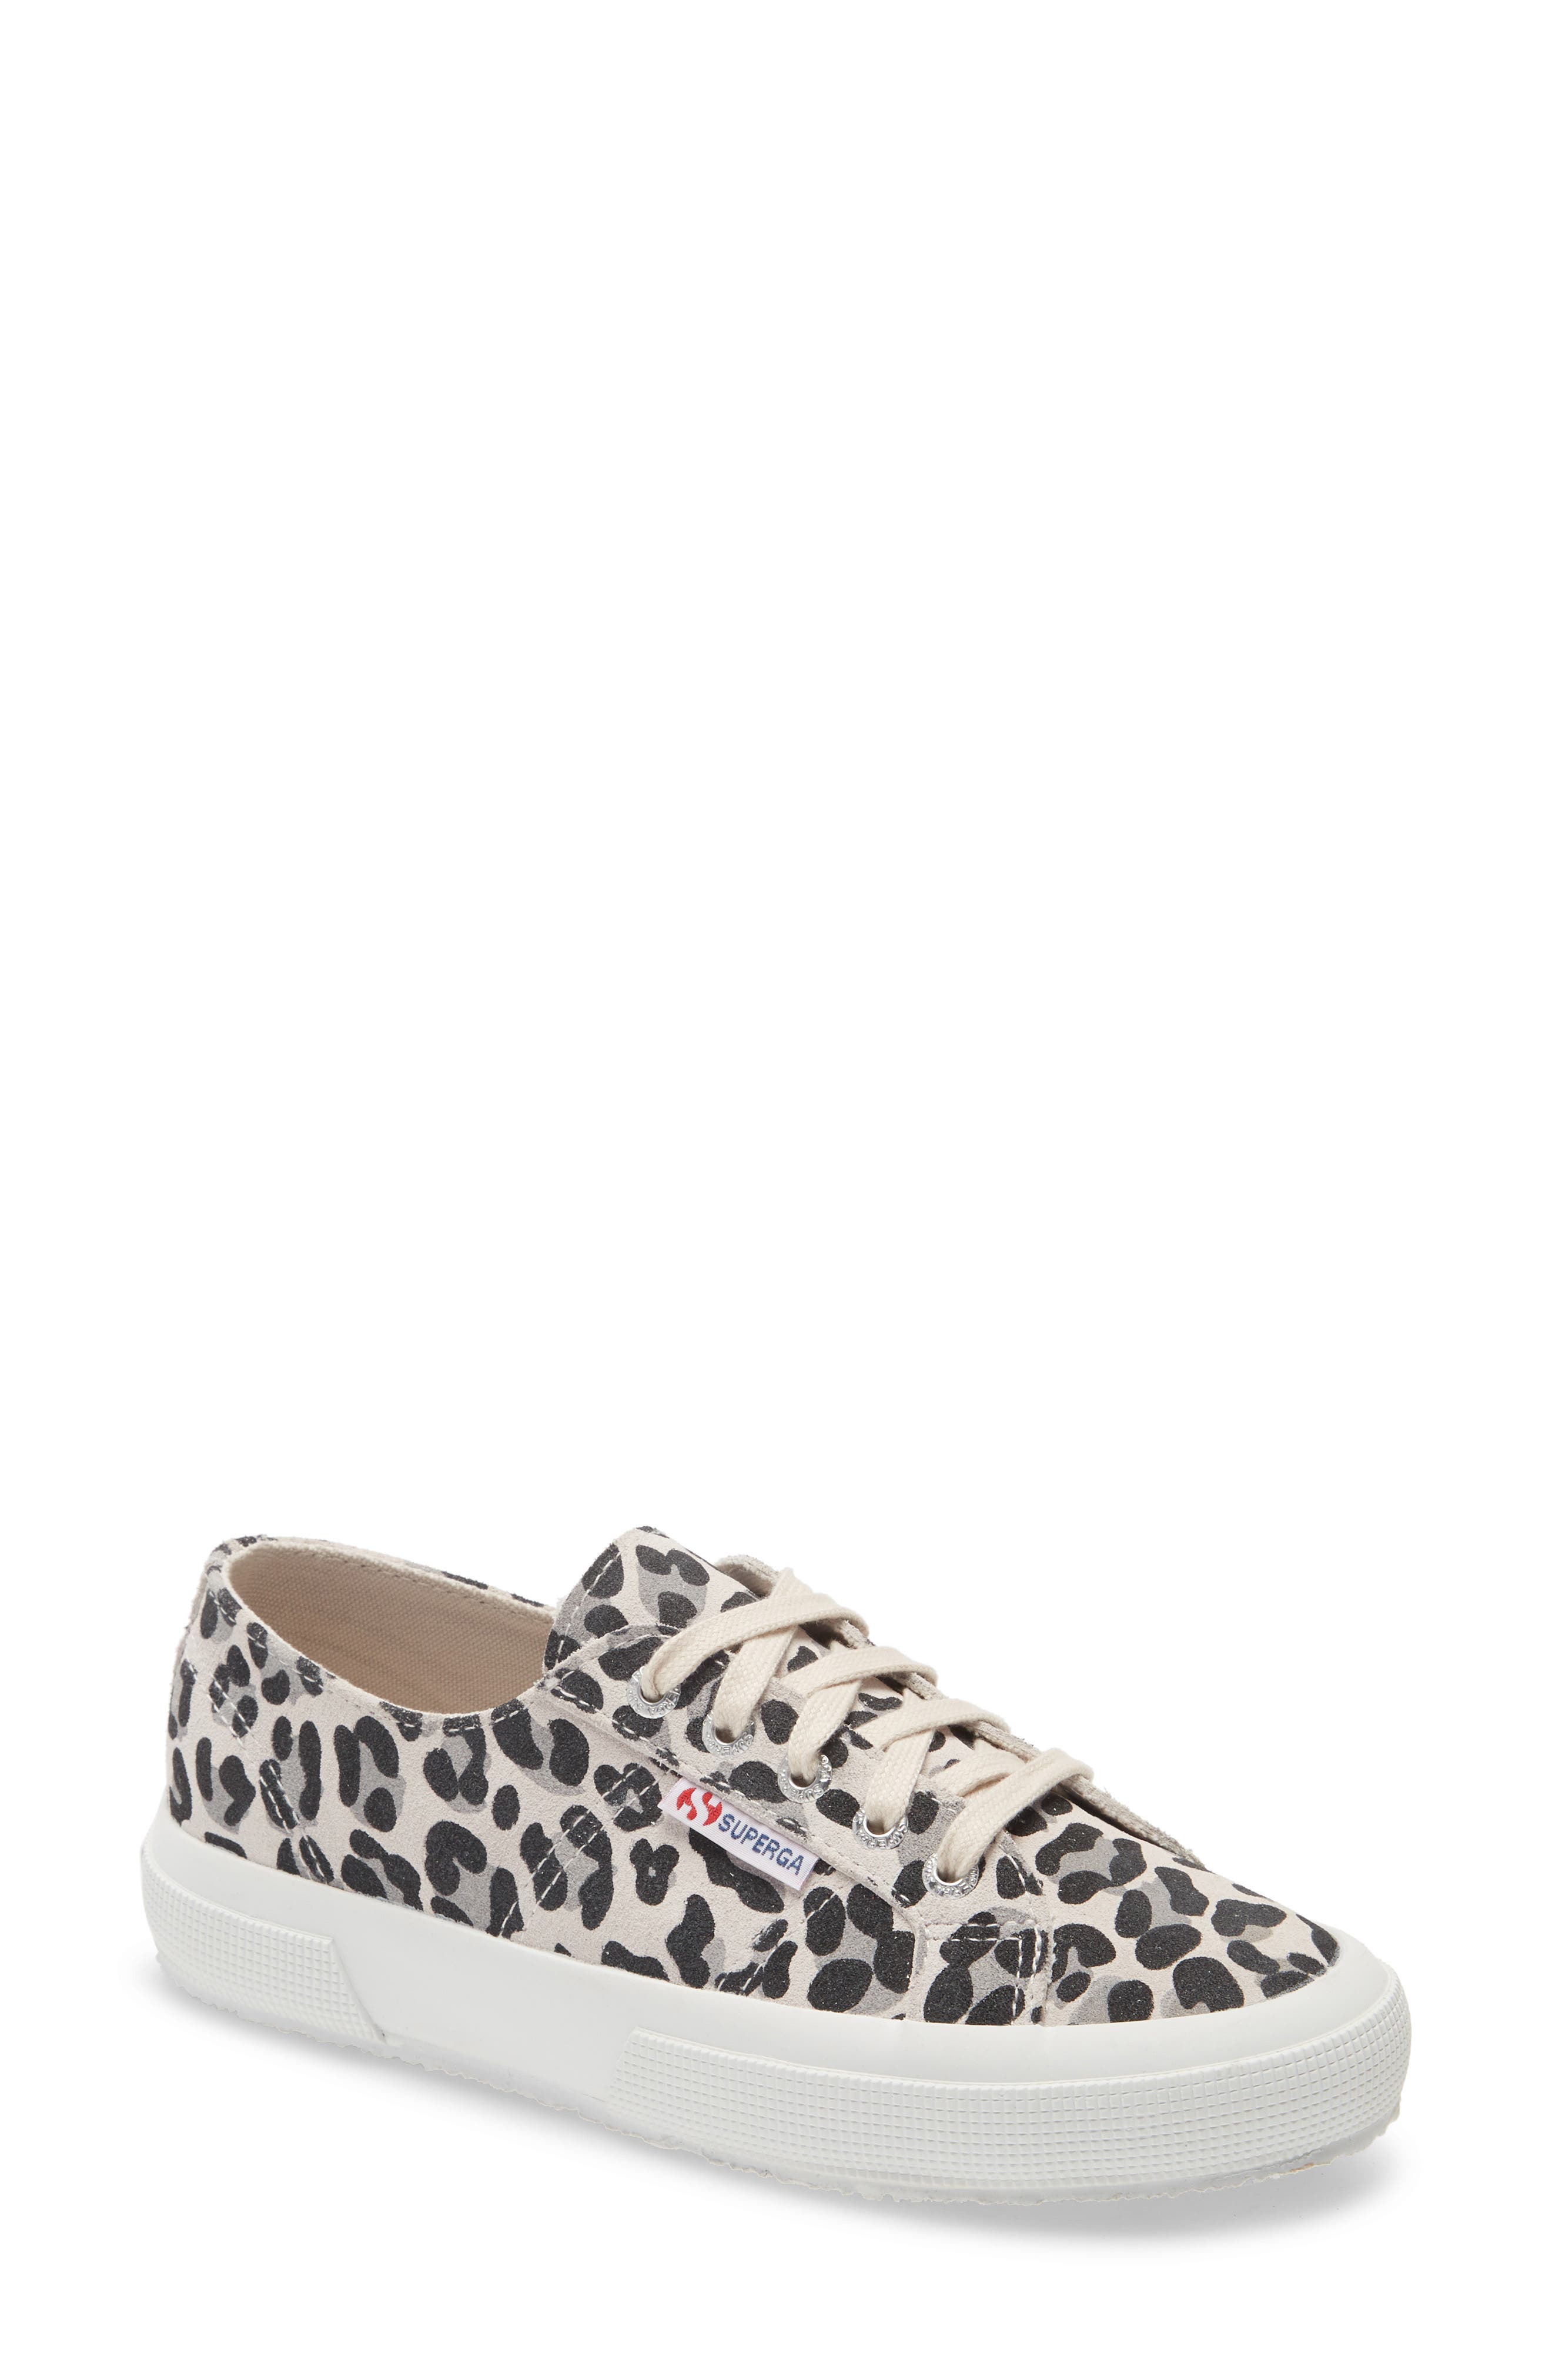 leopard print sneakers women